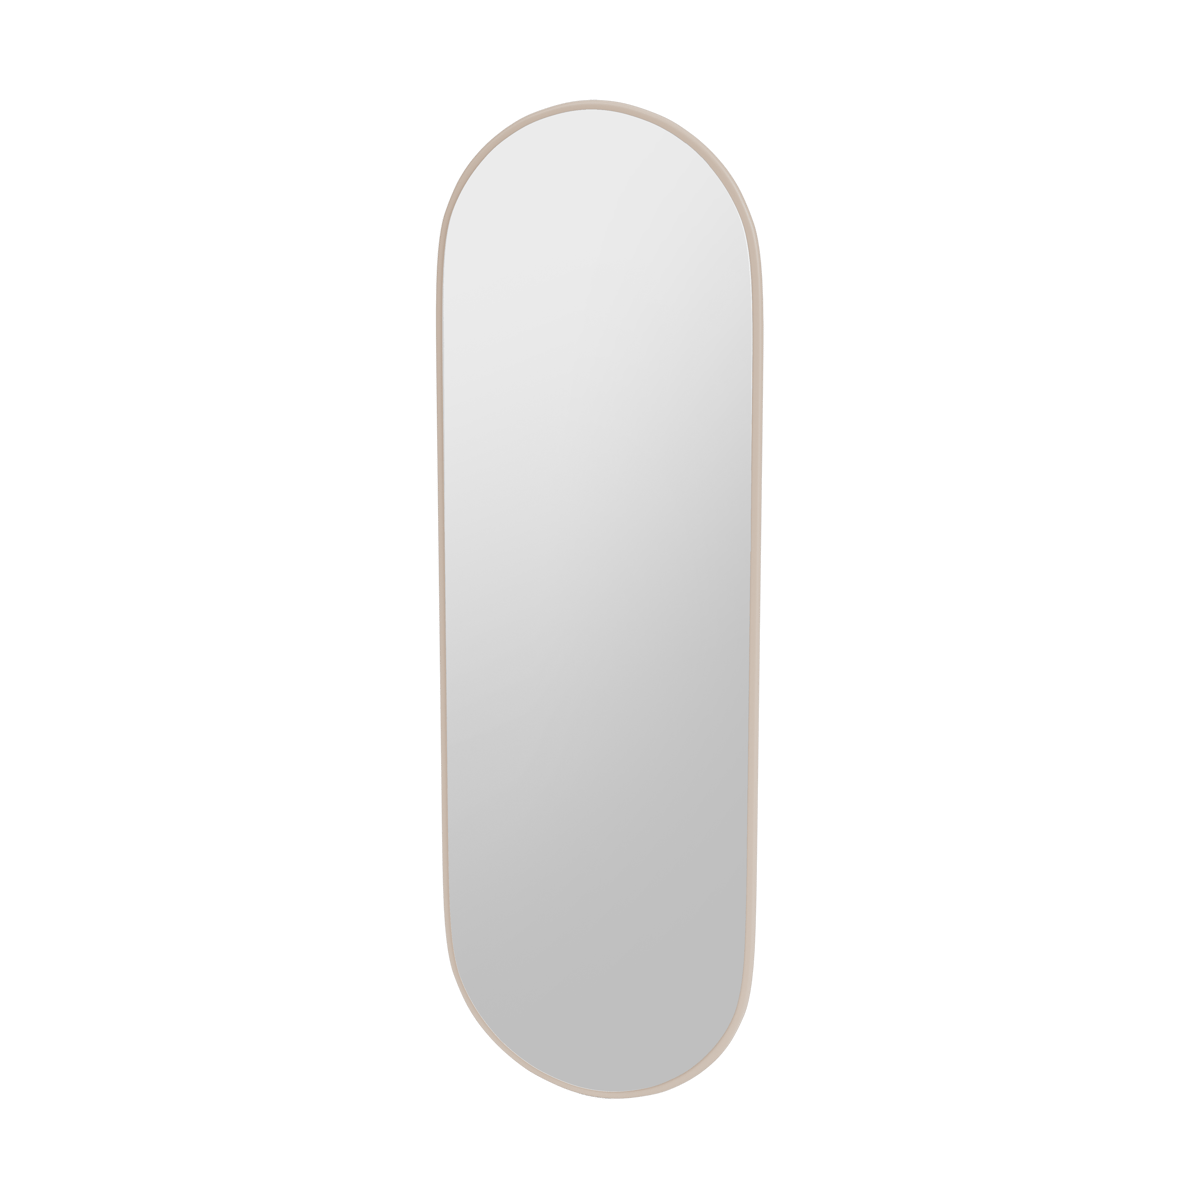 Montana FIGUUR Mirror Spiegel - SP824R Clay